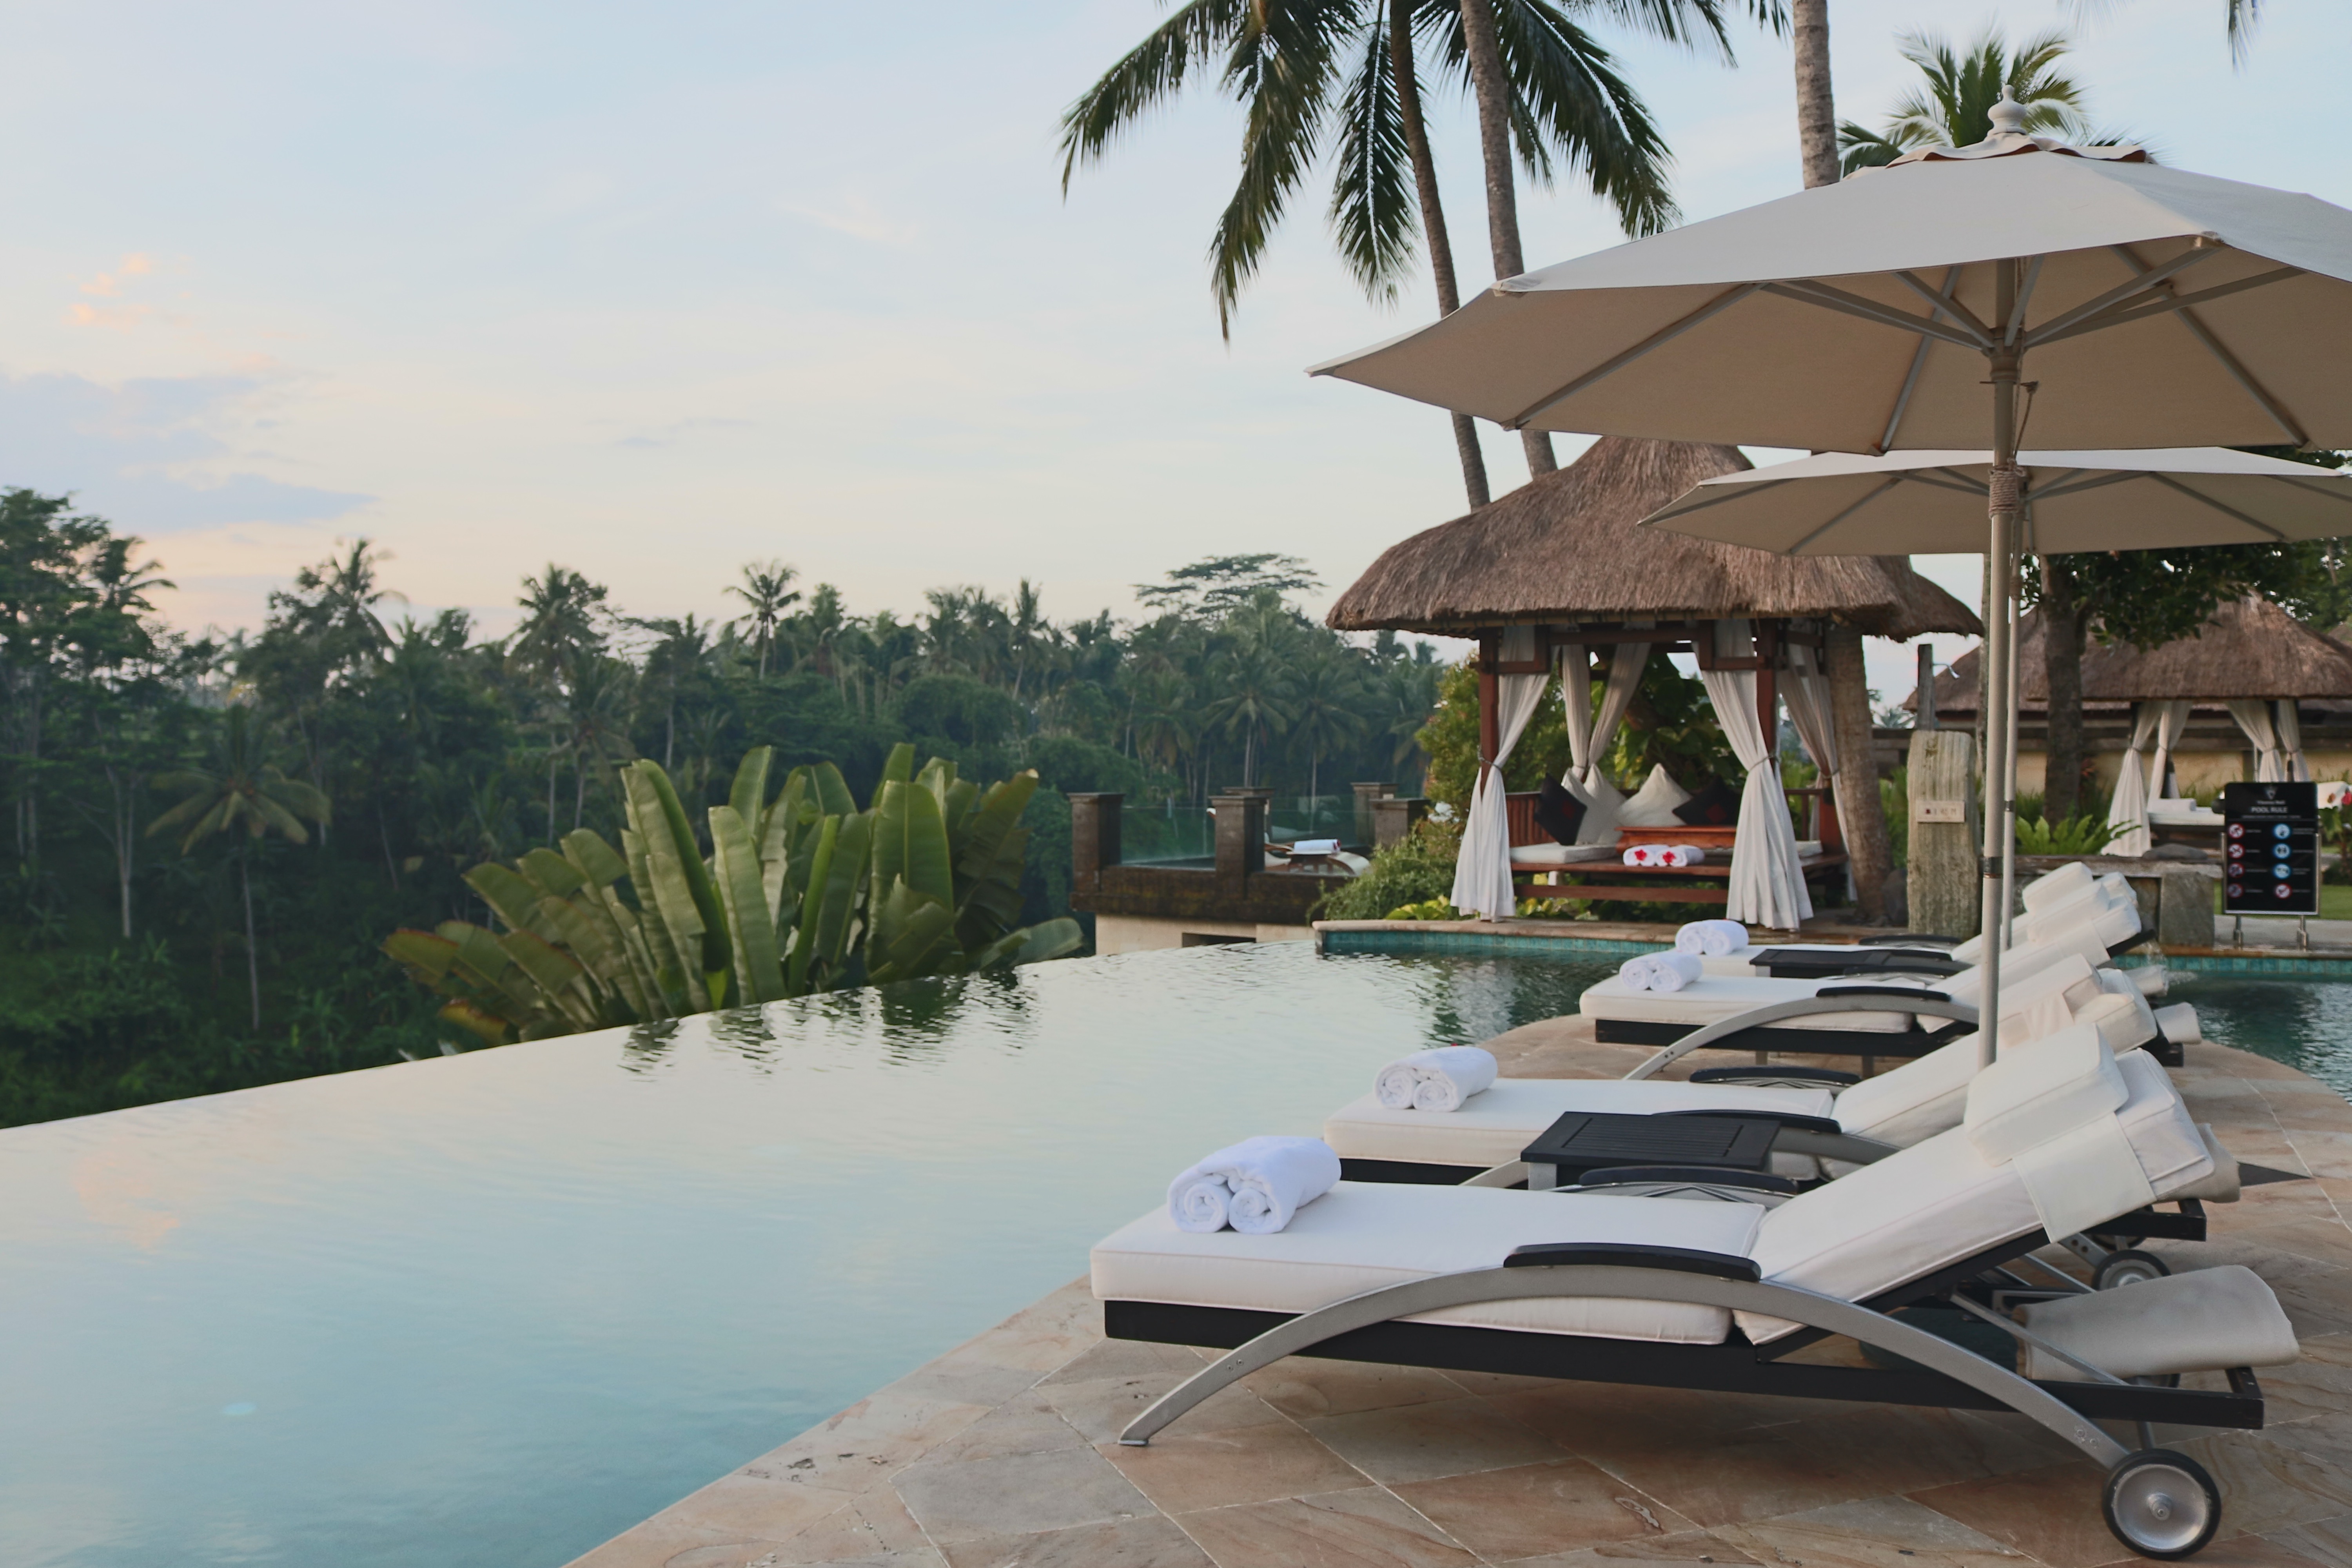 Main Pool at The Viceroy Bali